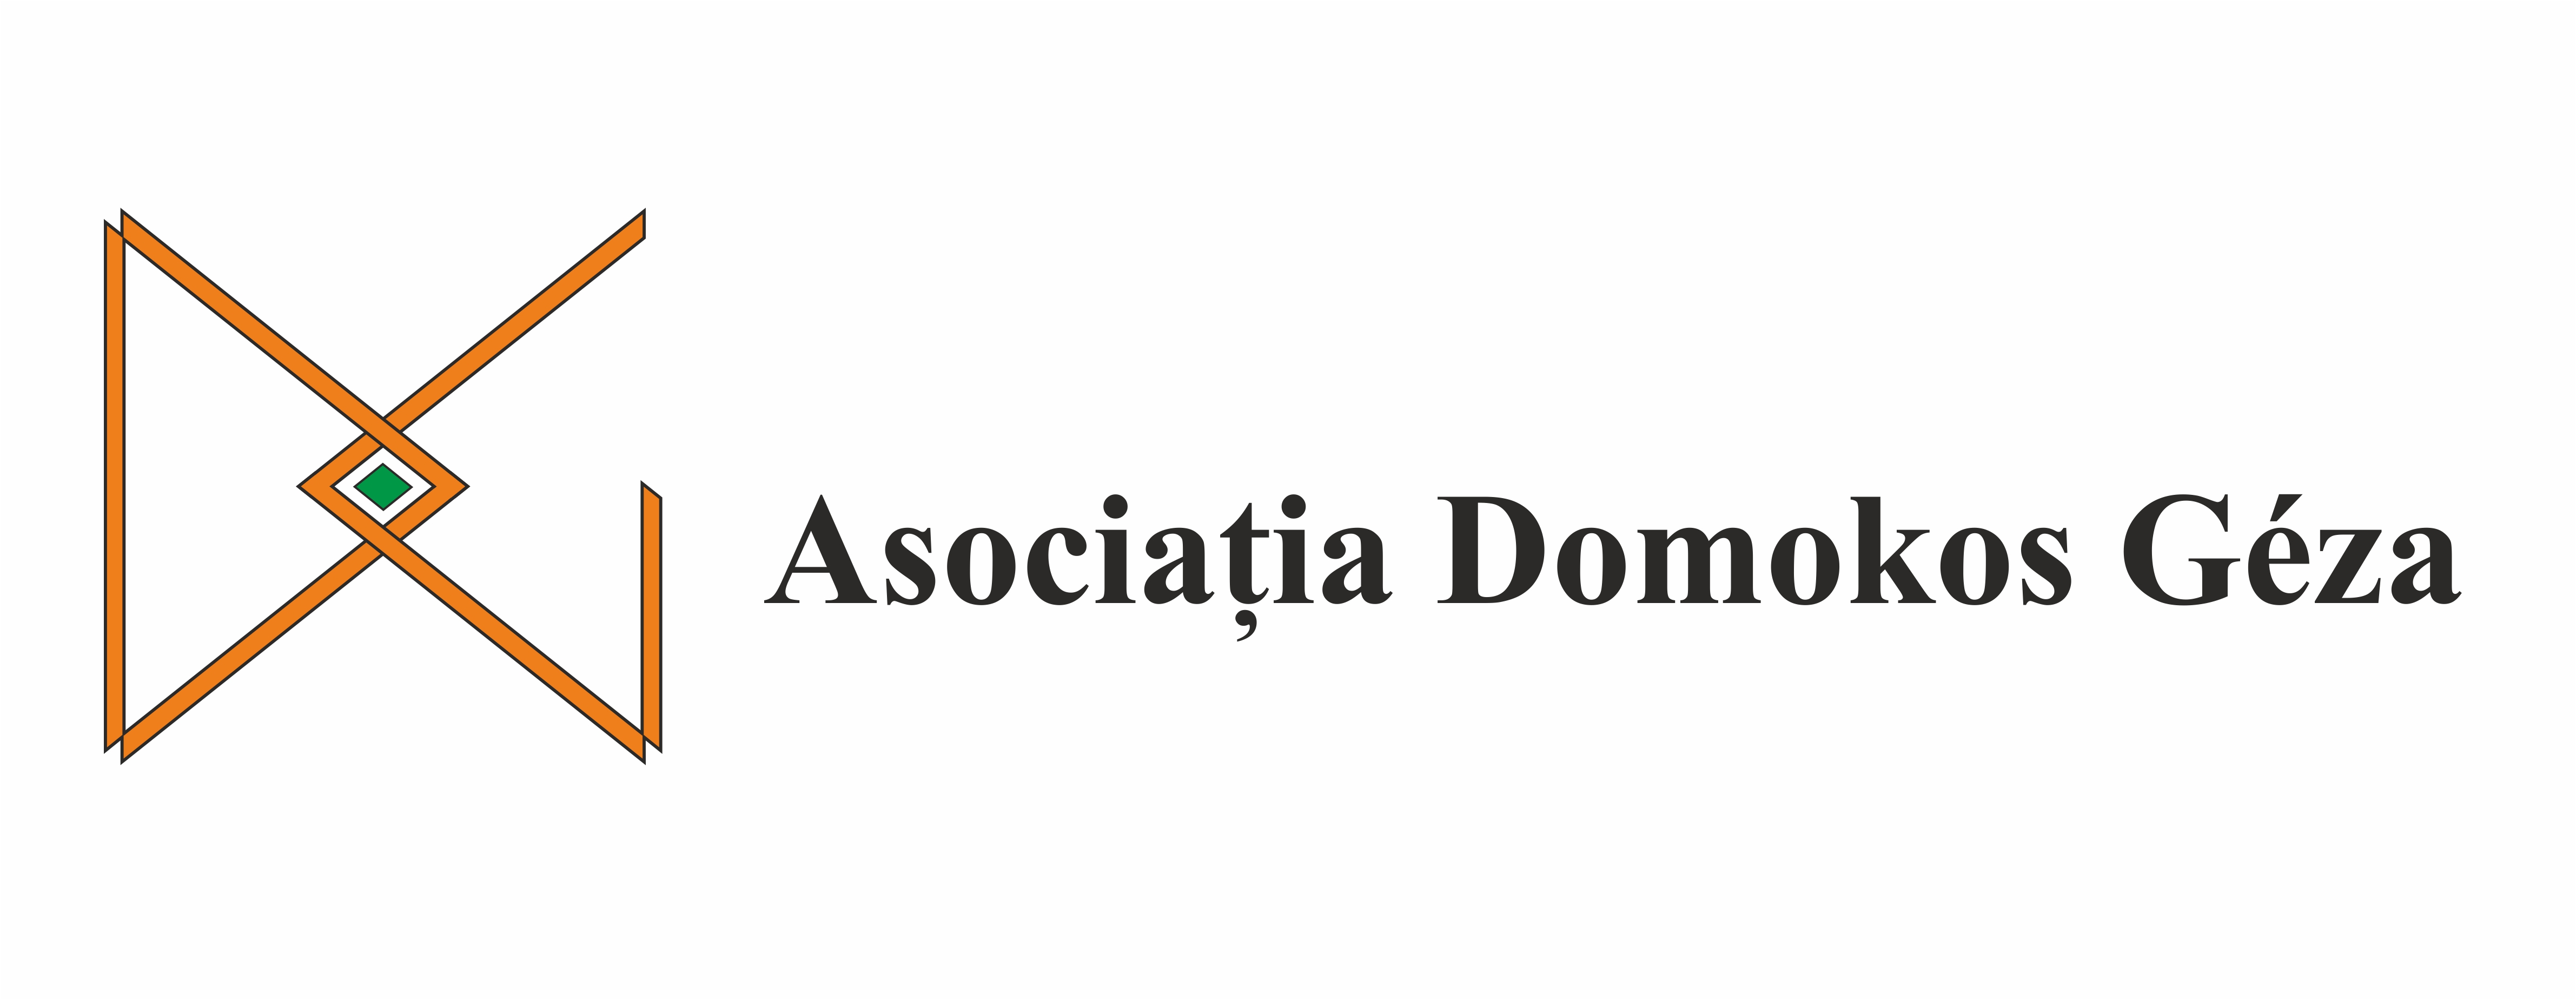 Asociatia Domokos Geza logo